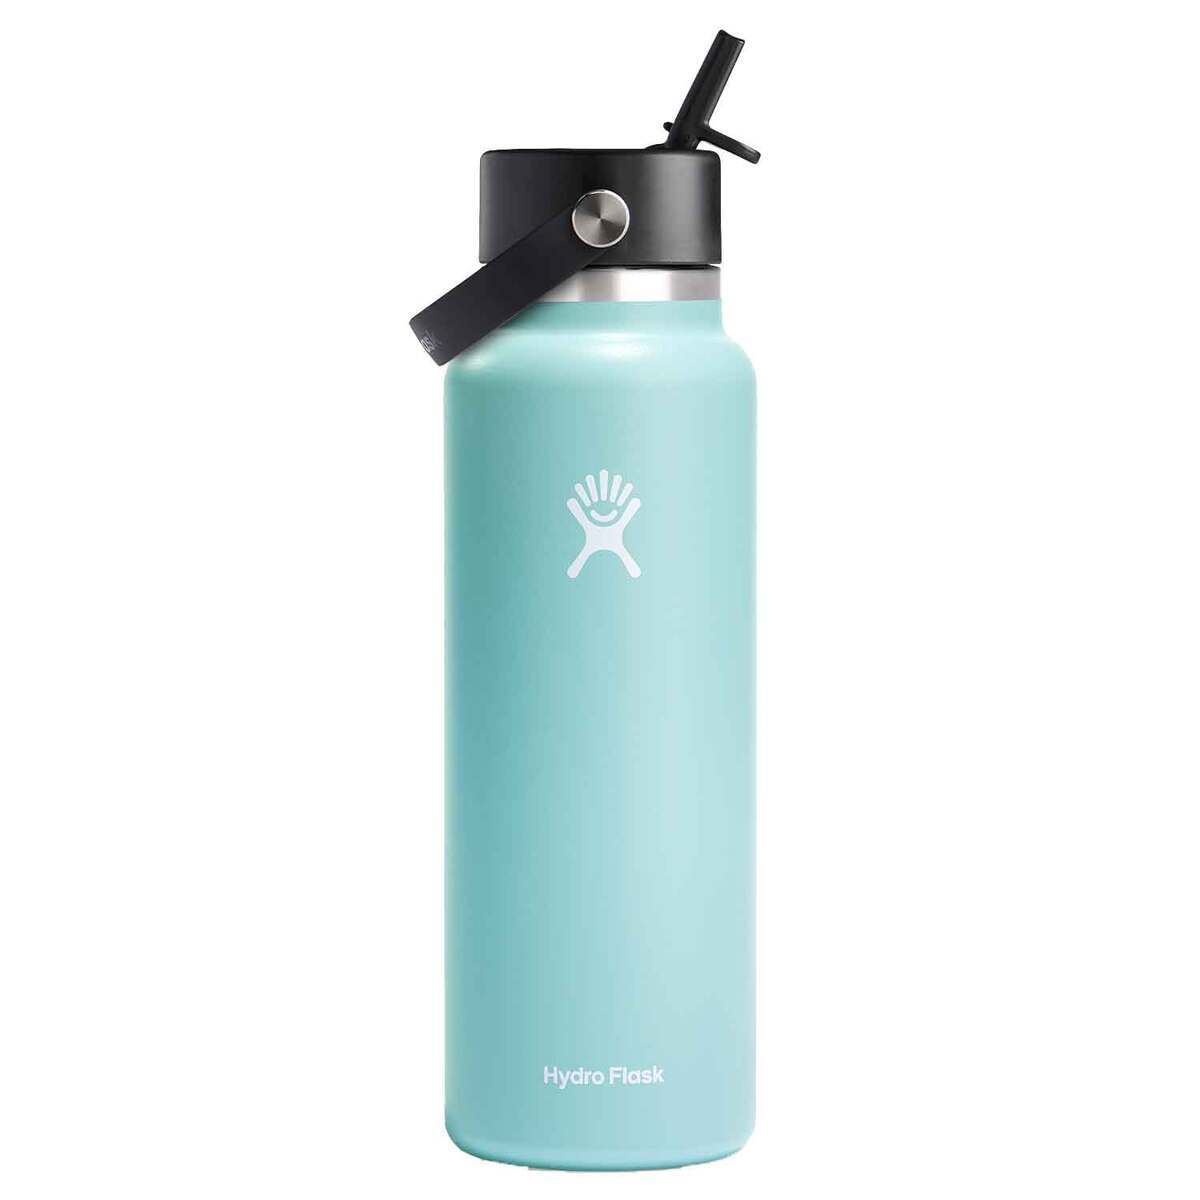 https://www.sportsmans.com/medias/hydro-flask-40oz-wide-mouth-insulated-bottle-with-flex-straw-cap-dew-1843612-1.jpg?context=bWFzdGVyfGltYWdlc3wyMzI2NXxpbWFnZS9qcGVnfGg5Ny9oMjMvMTE1MTUzNzY1MzM1MzQvMTIwMC1jb252ZXJzaW9uRm9ybWF0X2Jhc2UtY29udmVyc2lvbkZvcm1hdF9zbXctMTg0MzYxMi0xLmpwZ3w3YzZlOGI0ZDBlZjM2YTgxMjE2OTViYmZhMDg0YTIxNjEzZjAxYzFkOGExYmVmYTUwMmM2NjEzMzQxODBmYjg1